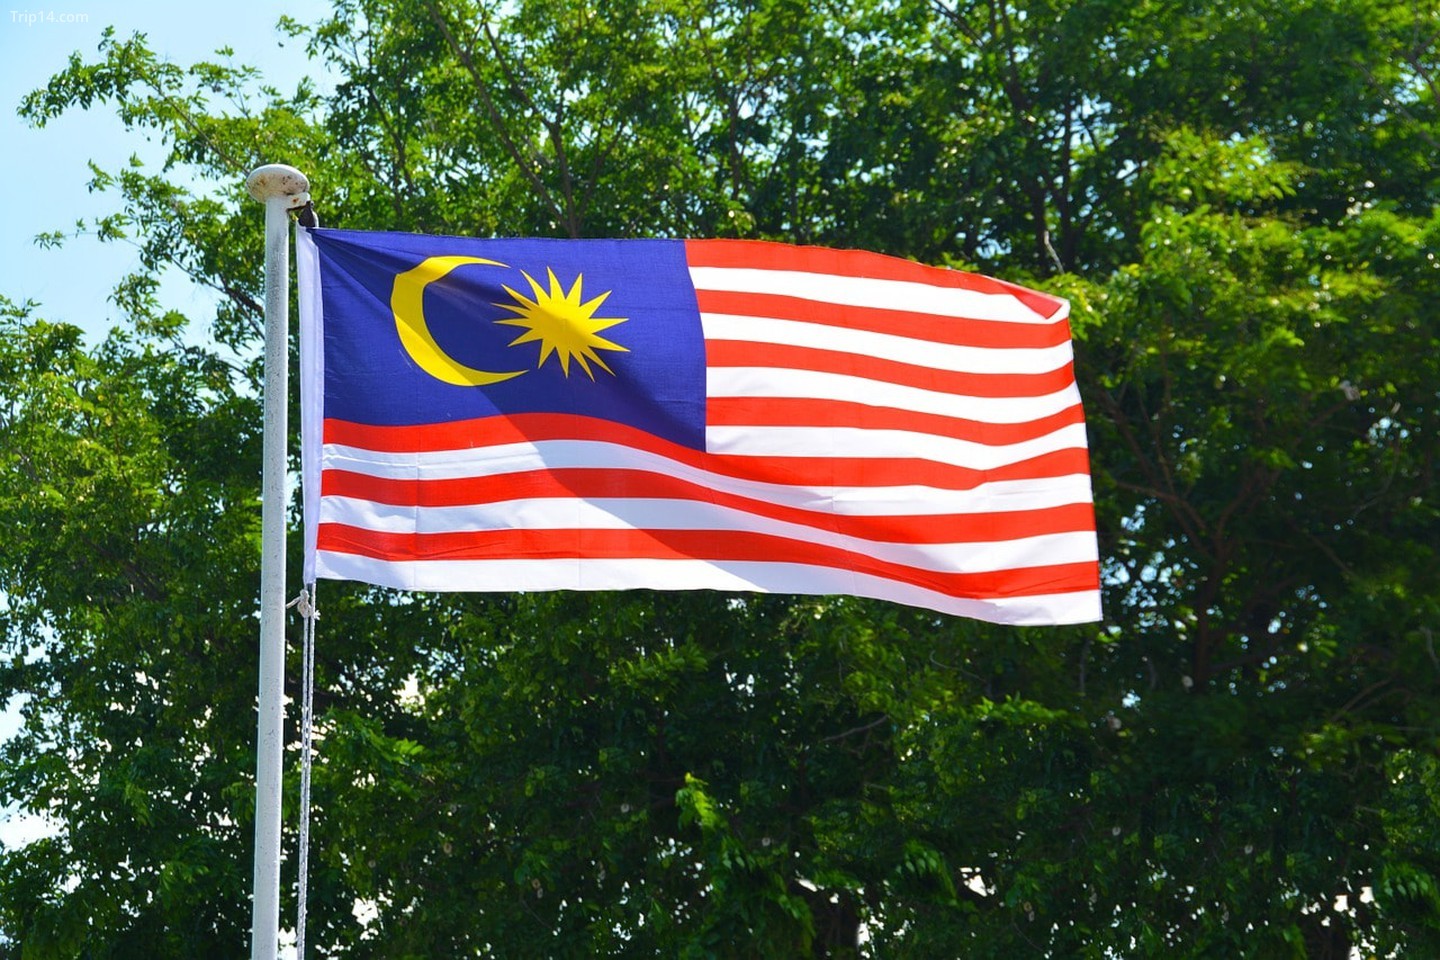 Ý nghĩa quốc kỳ Malaysia: Quốc kỳ Malaysia được thiết kế với sự kết hợp tinh tế giữa các yếu tố tạo thành nên sự đa dạng của đất nước. Mỗi mảnh sắc trong quốc kỳ đều có ý nghĩa riêng, khắc họa rõ nét sự đan xen và liền mạch của các dân tộc tại đây. Hãy xem hình ảnh cùng tìm hiểu thêm về ý nghĩa của quốc kỳ Malaysia nhé!